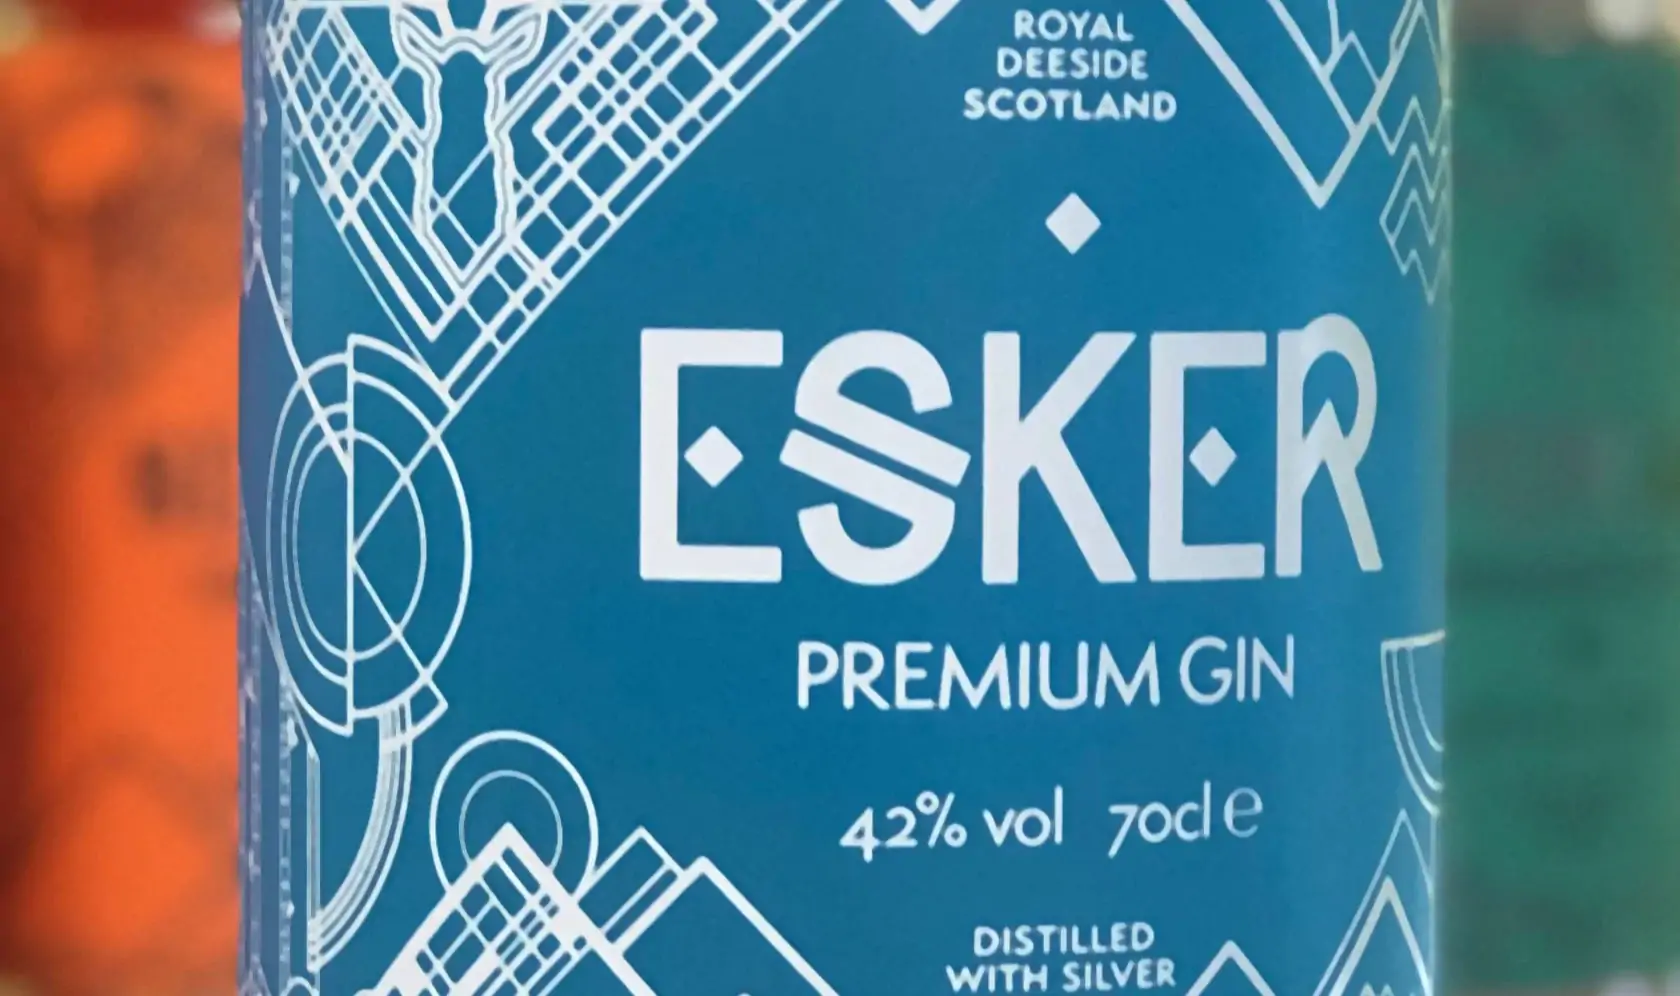 dcx-esker-gin-new-product-bottle